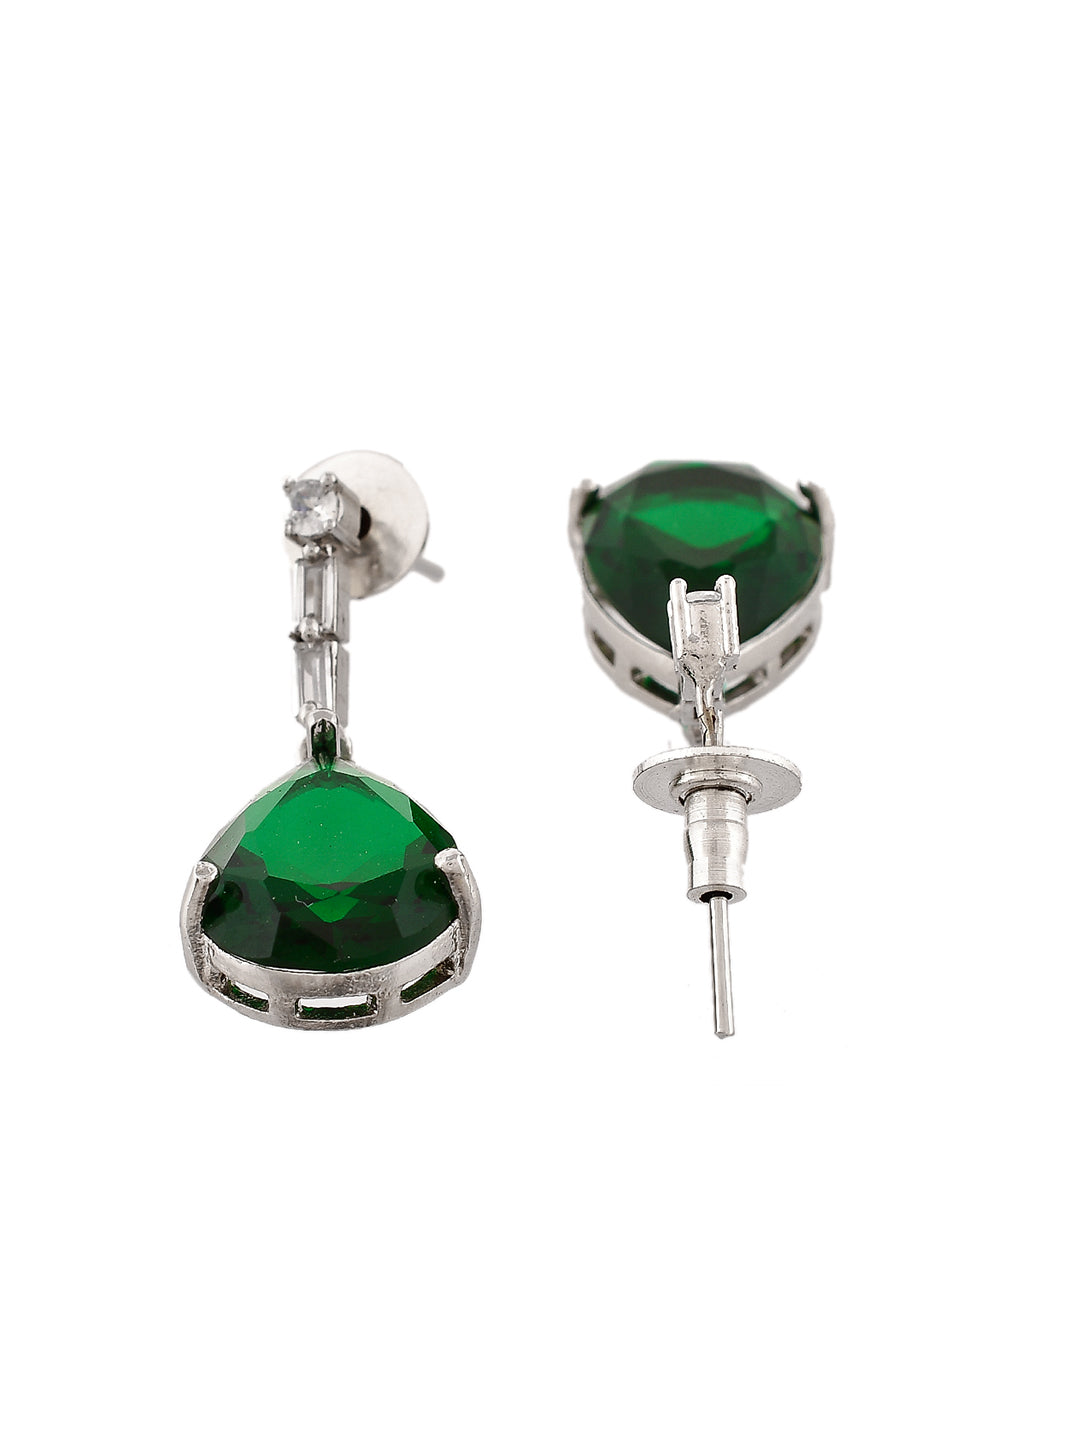 Faux Emerald Pendant Set